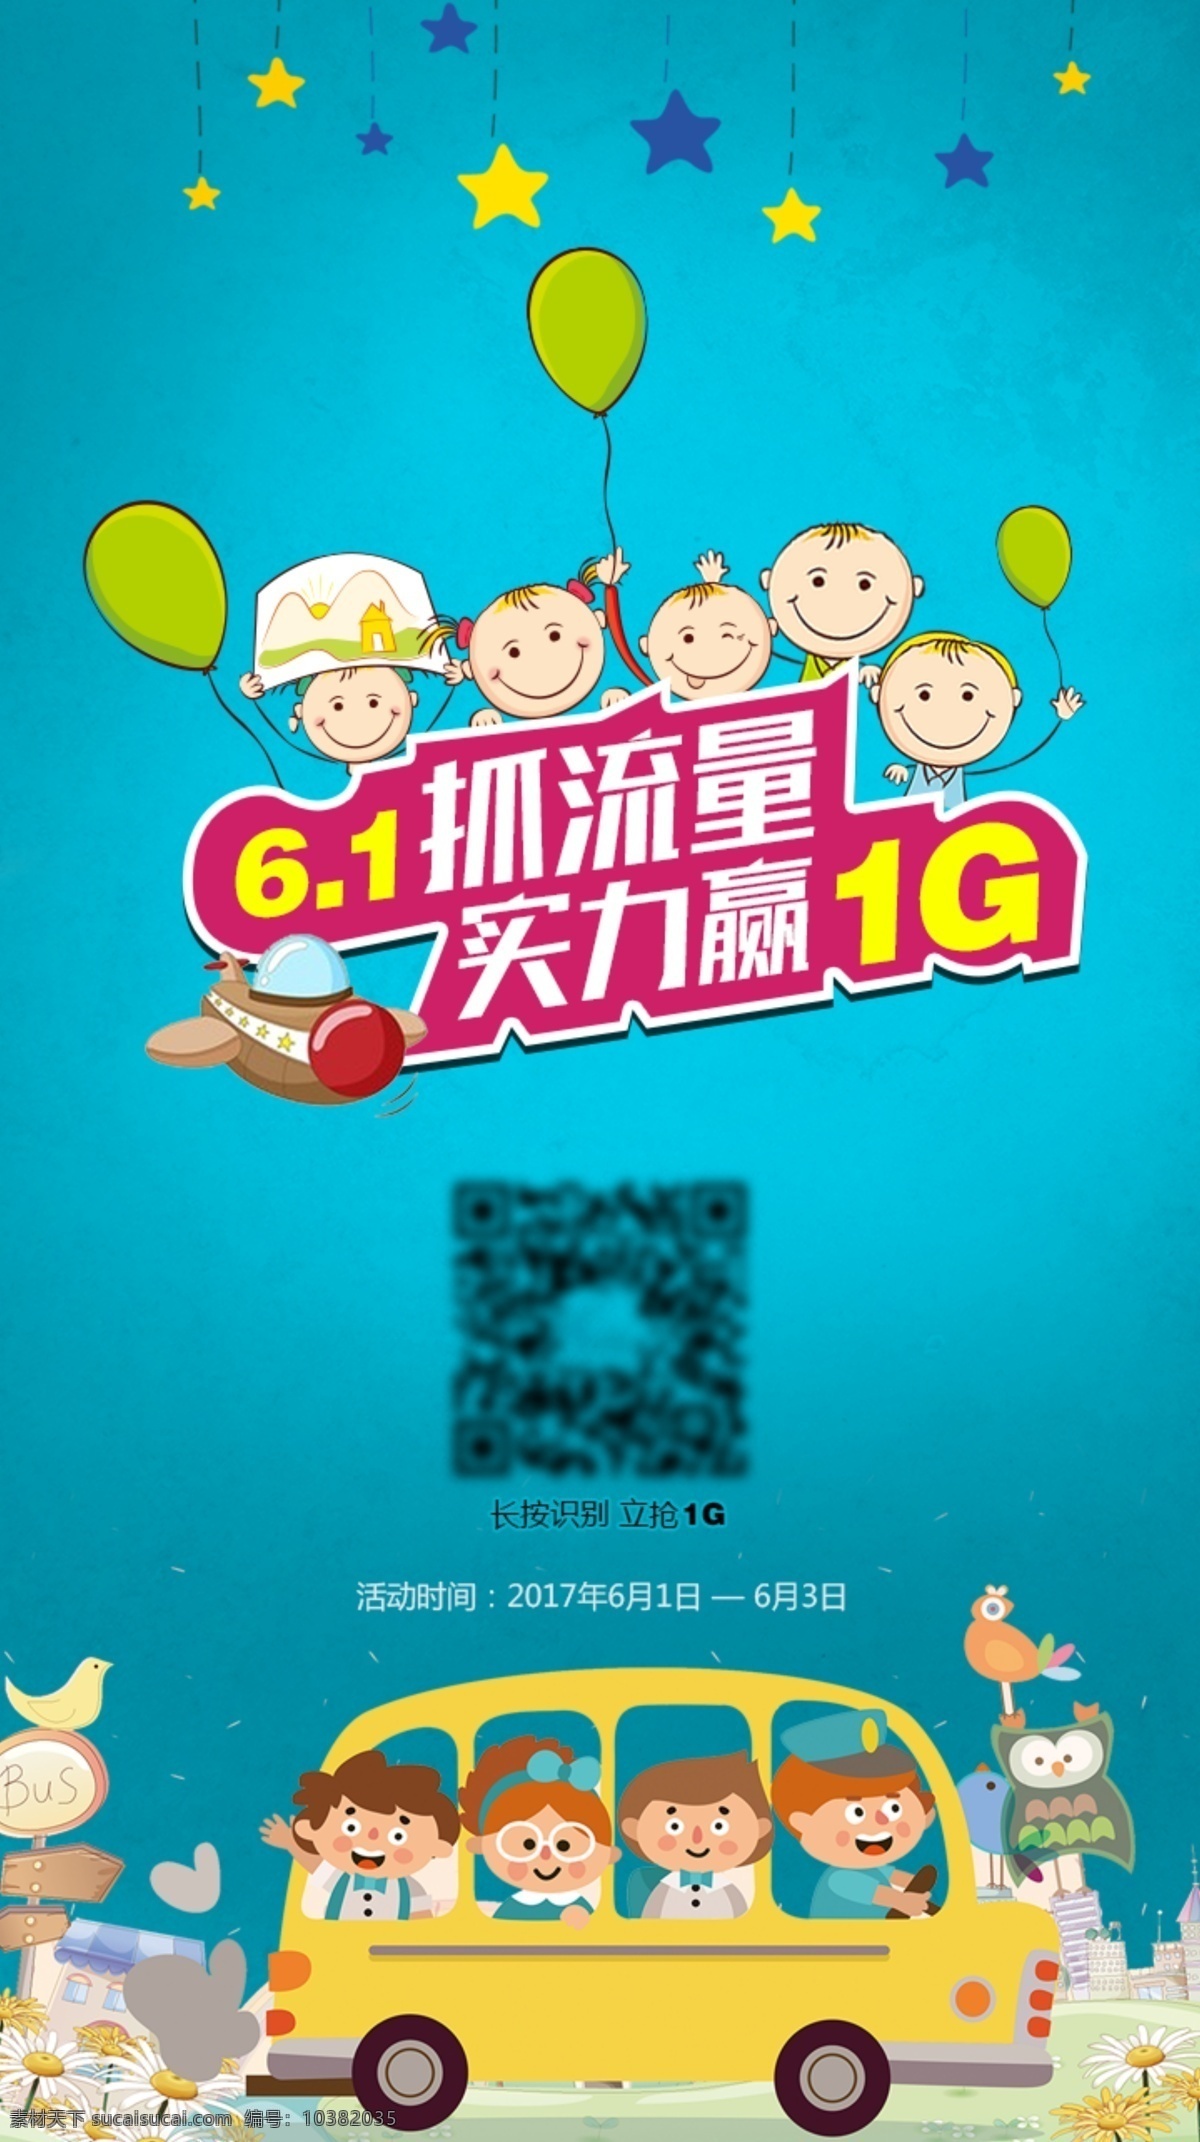 儿童节 微 信 活动推广 图 六一 活动 海报 可爱儿童 小汽车 蓝色背景 气球 星星 小飞机 卡通人物